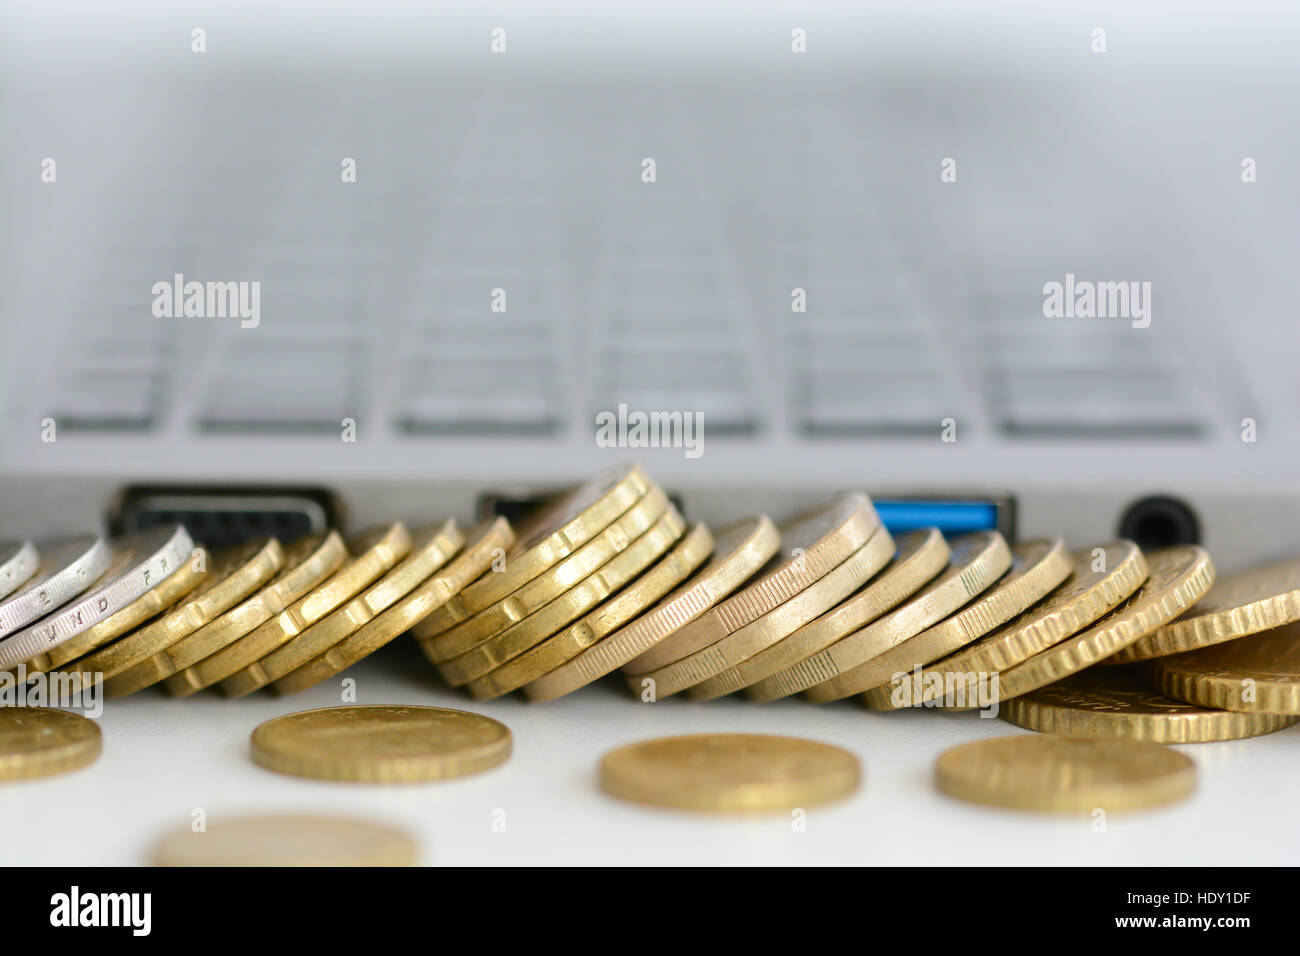 Stack oder Stapel von Münzen und eine Laptop-Tastatur Stockfoto